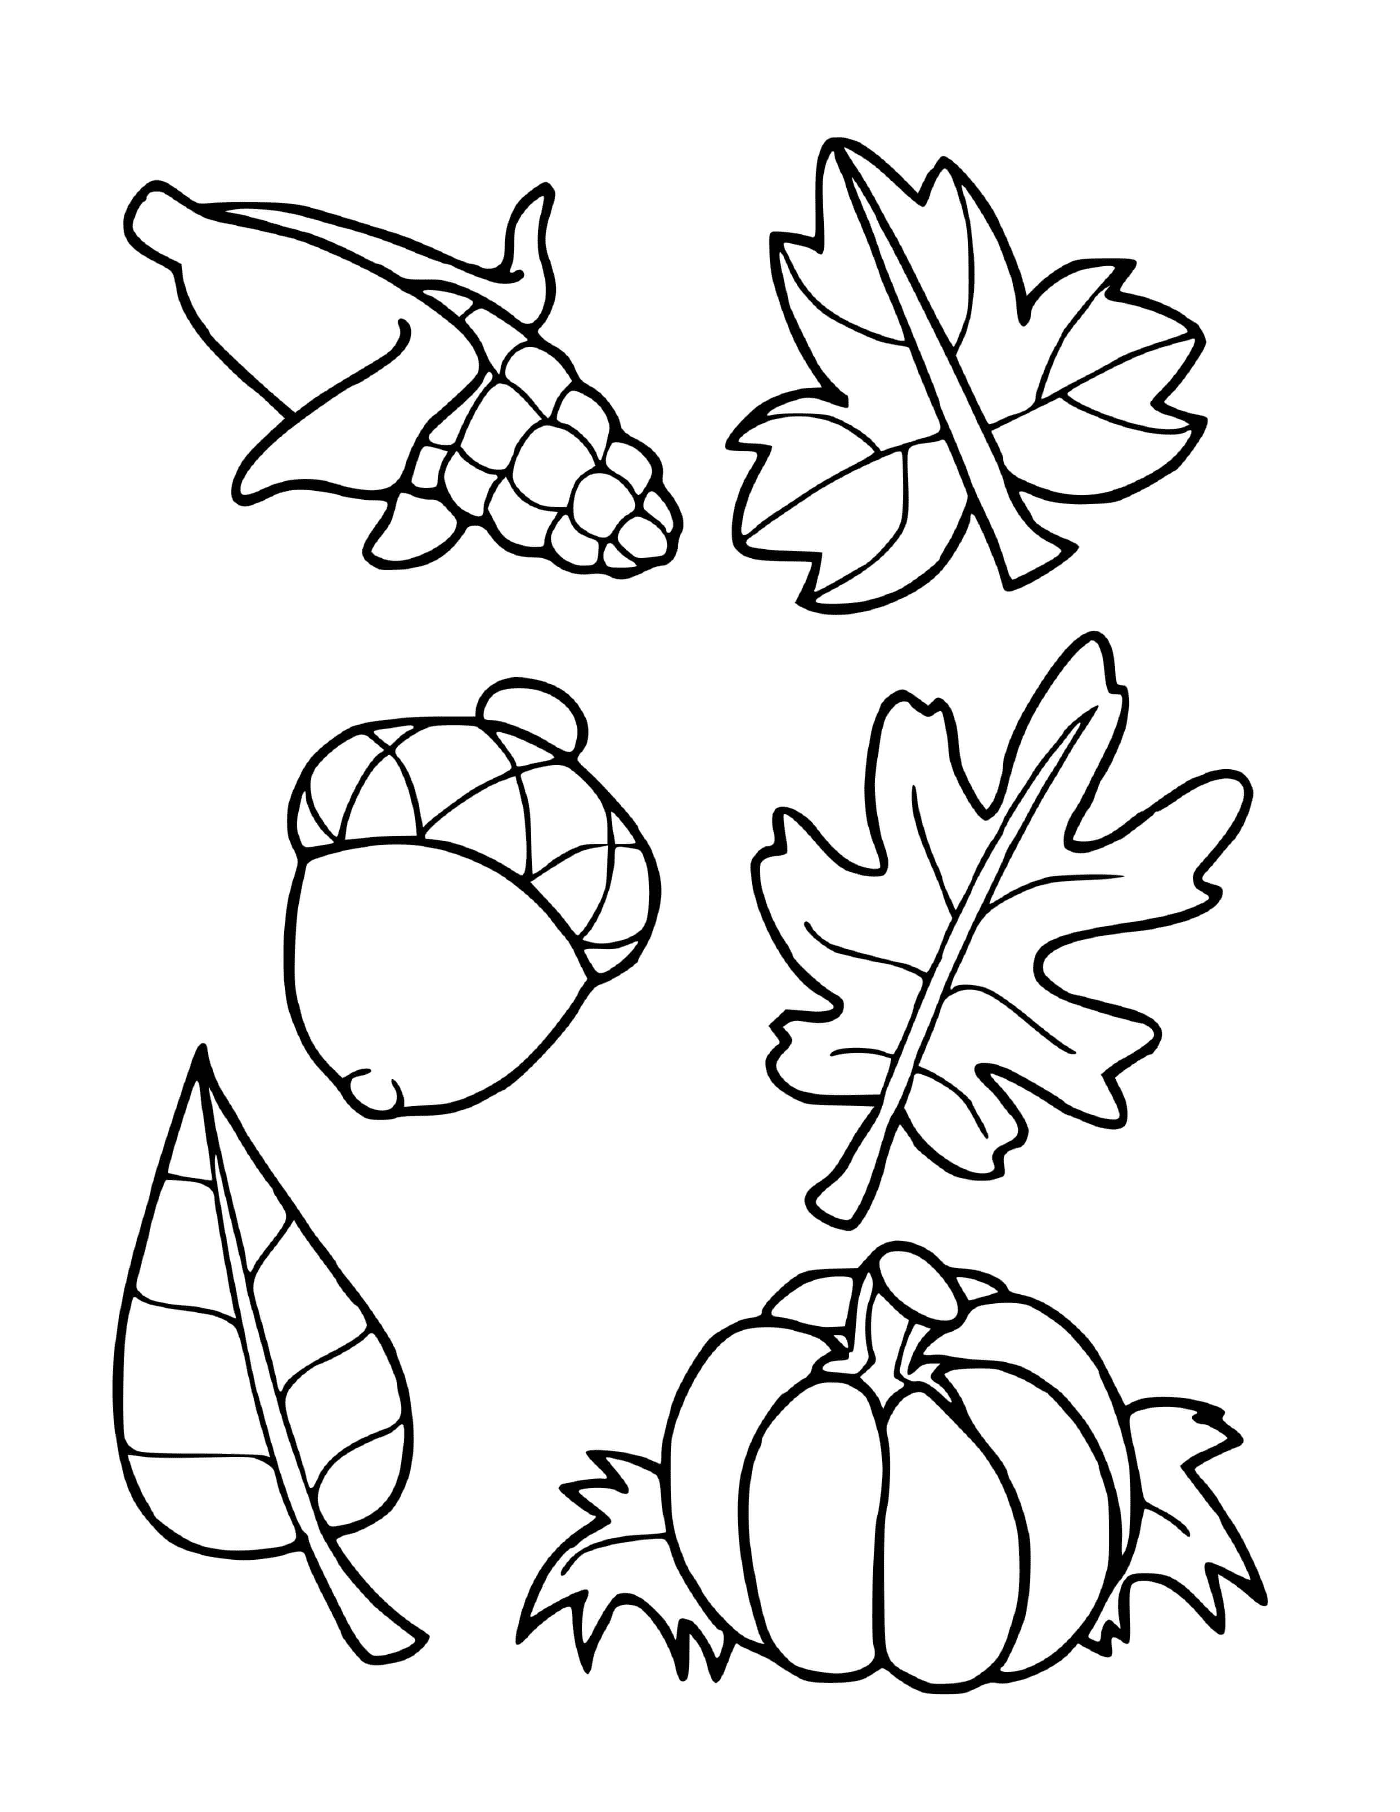  Sechs verschiedene Blätter gezeichnet 